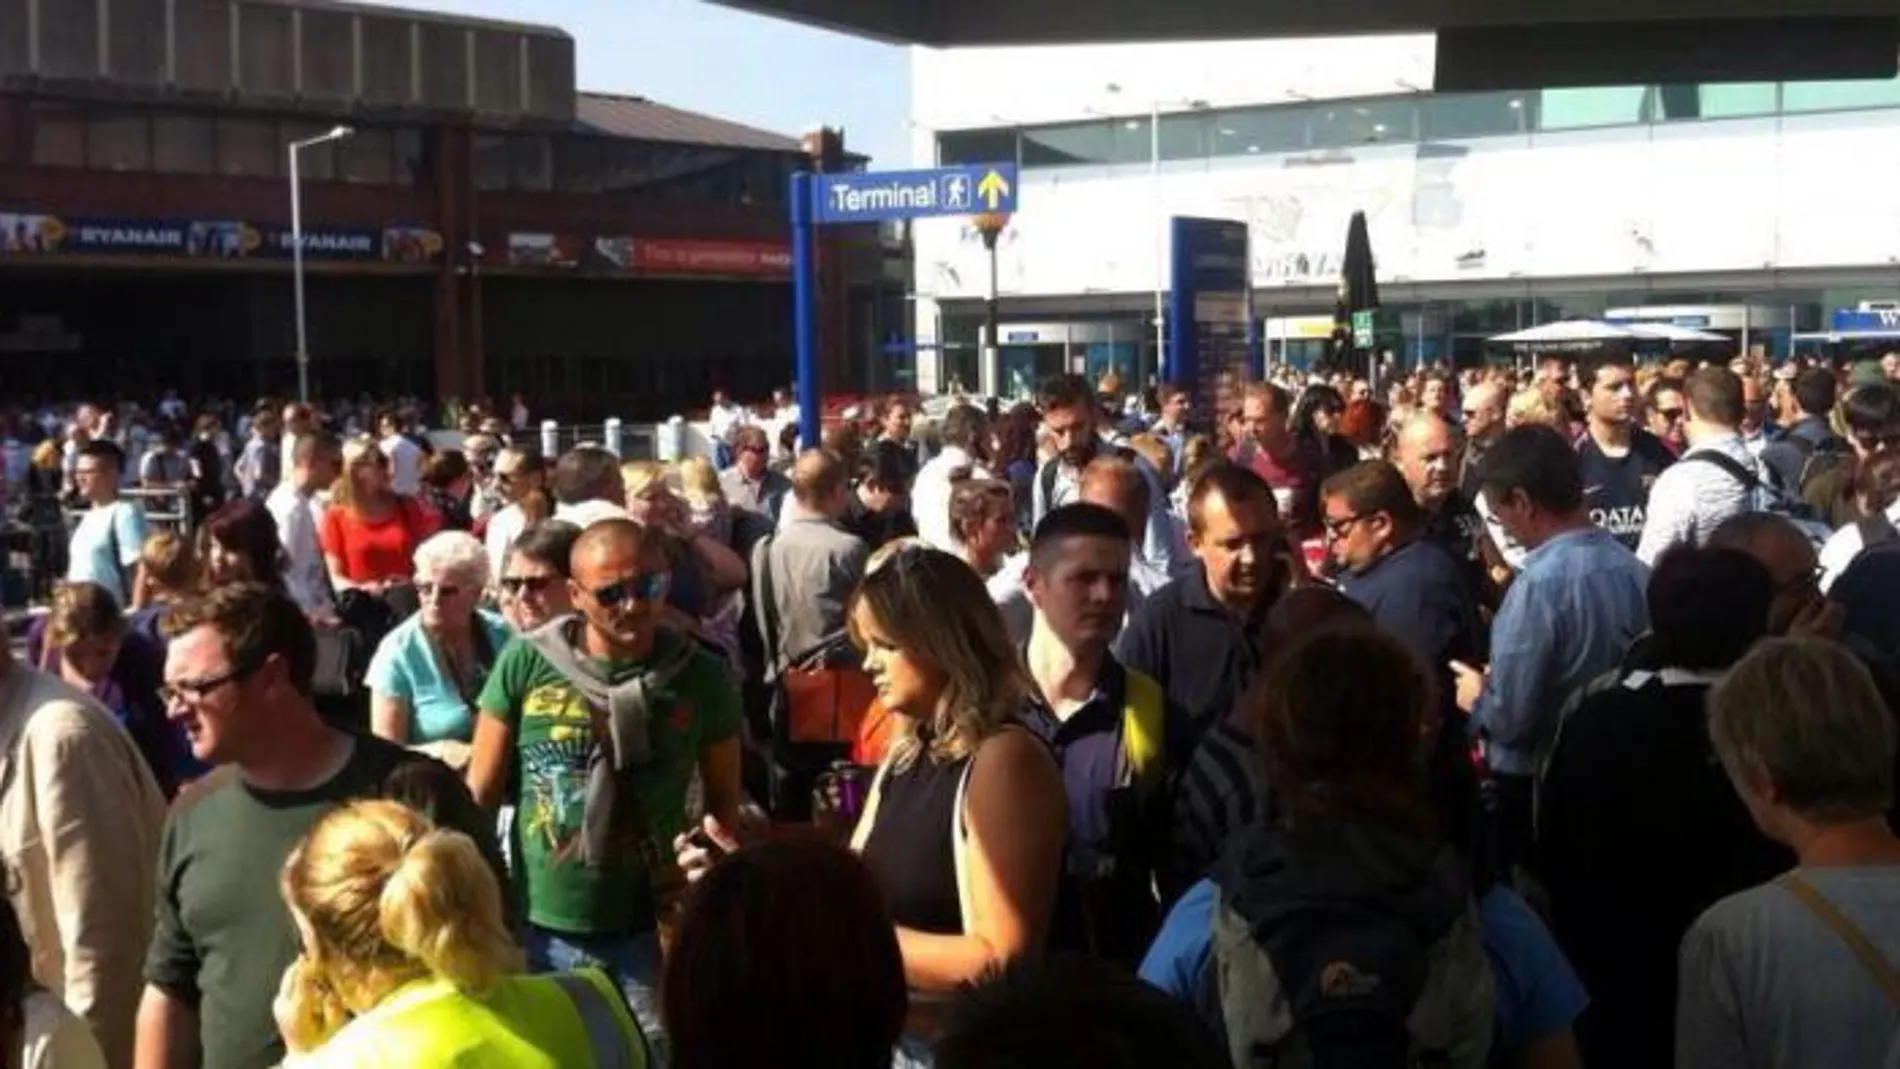 Imagen de los pasajeros evacuados en el exterior de la terminal.